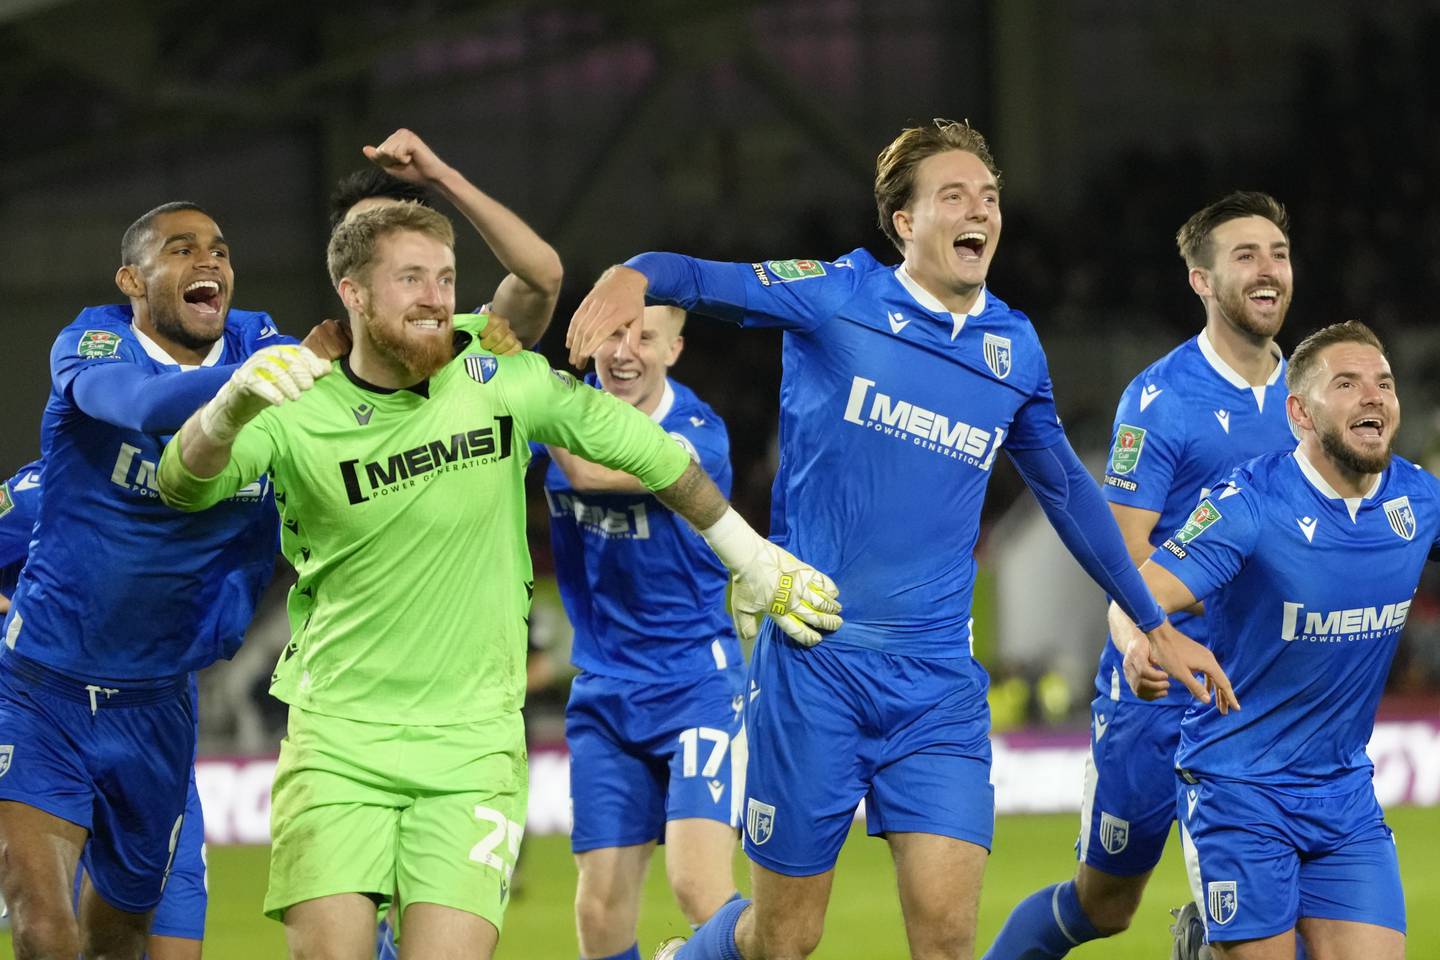 Gillingham players celebrate winning on penalties against Brentford. AP Photo